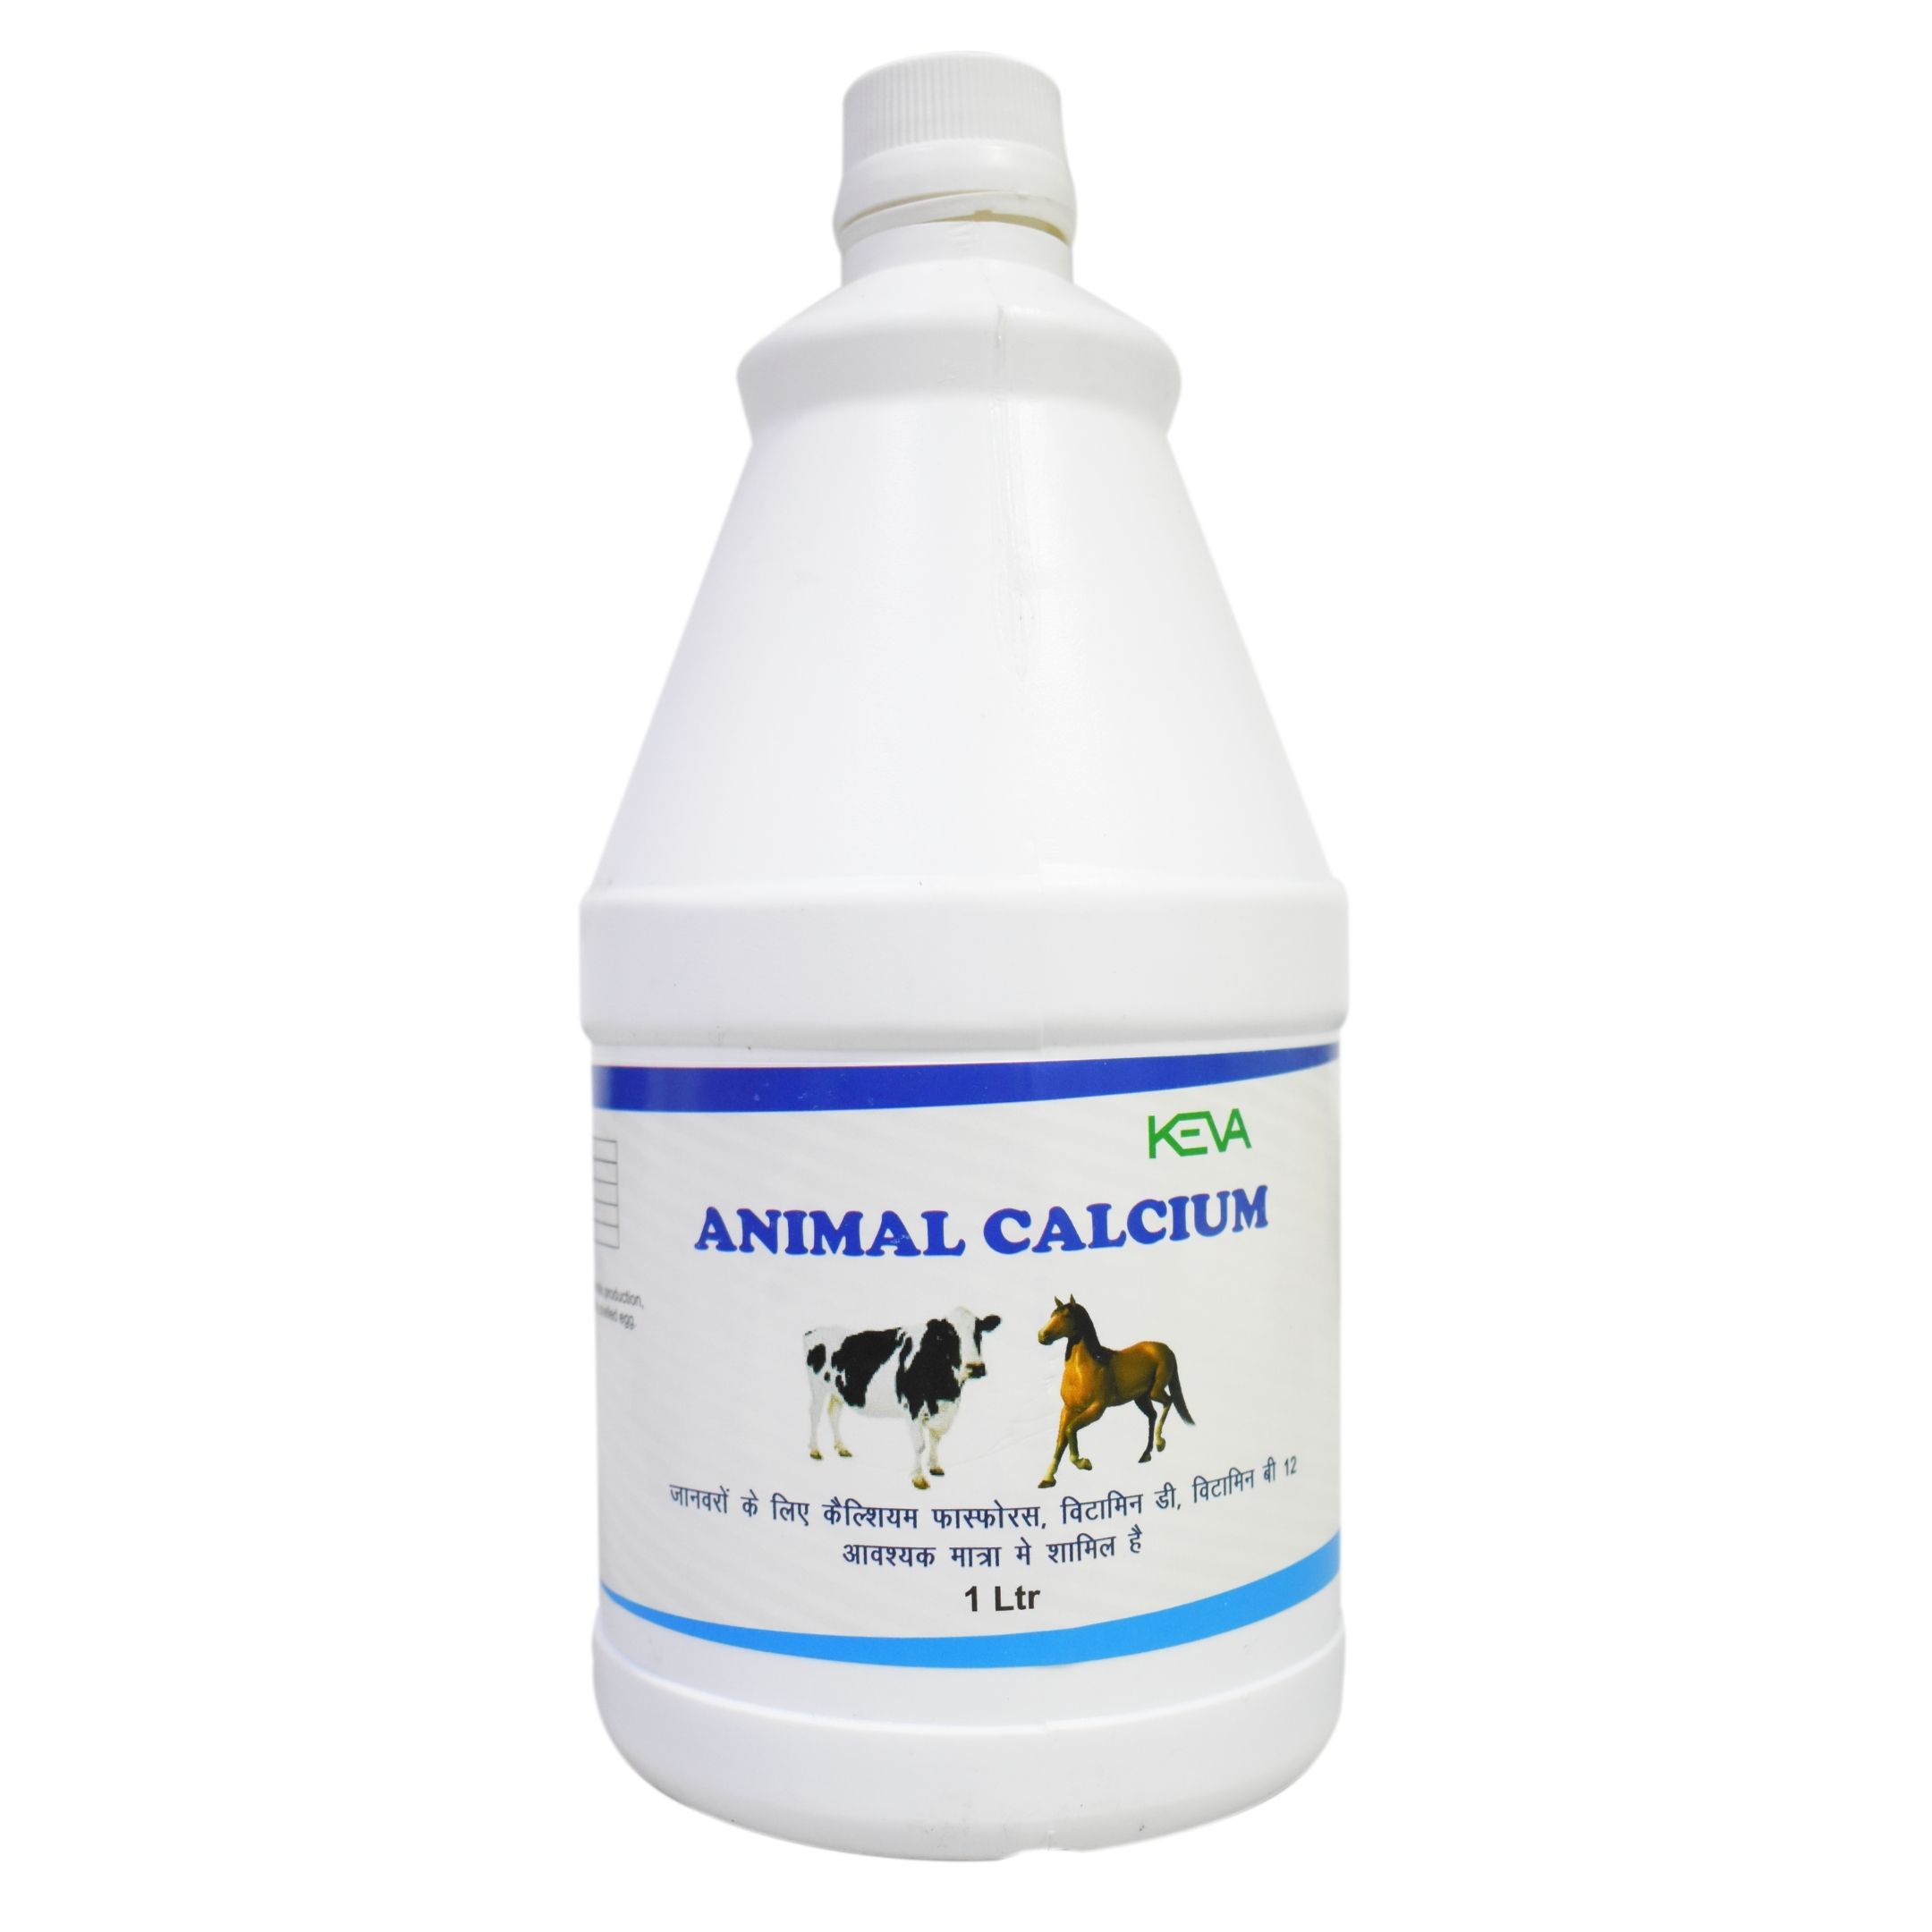 Keva Animal Calcium